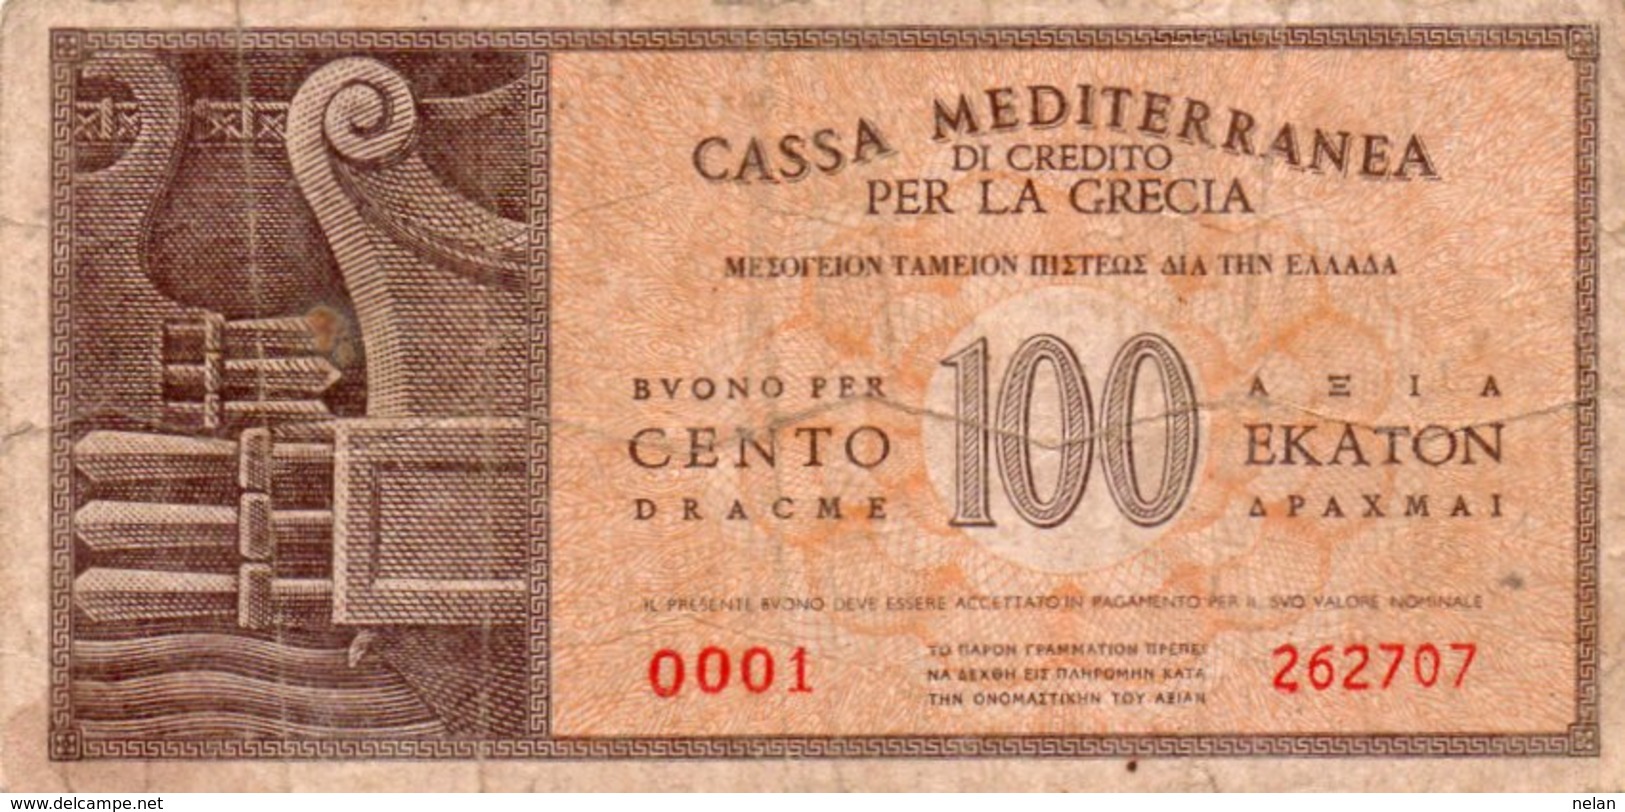 GRECIA 100 DRACME 1941 -CASSA MEDITERRANEA PER LA GRECIA-Military Issues P-M4  VG++ - Griekenland